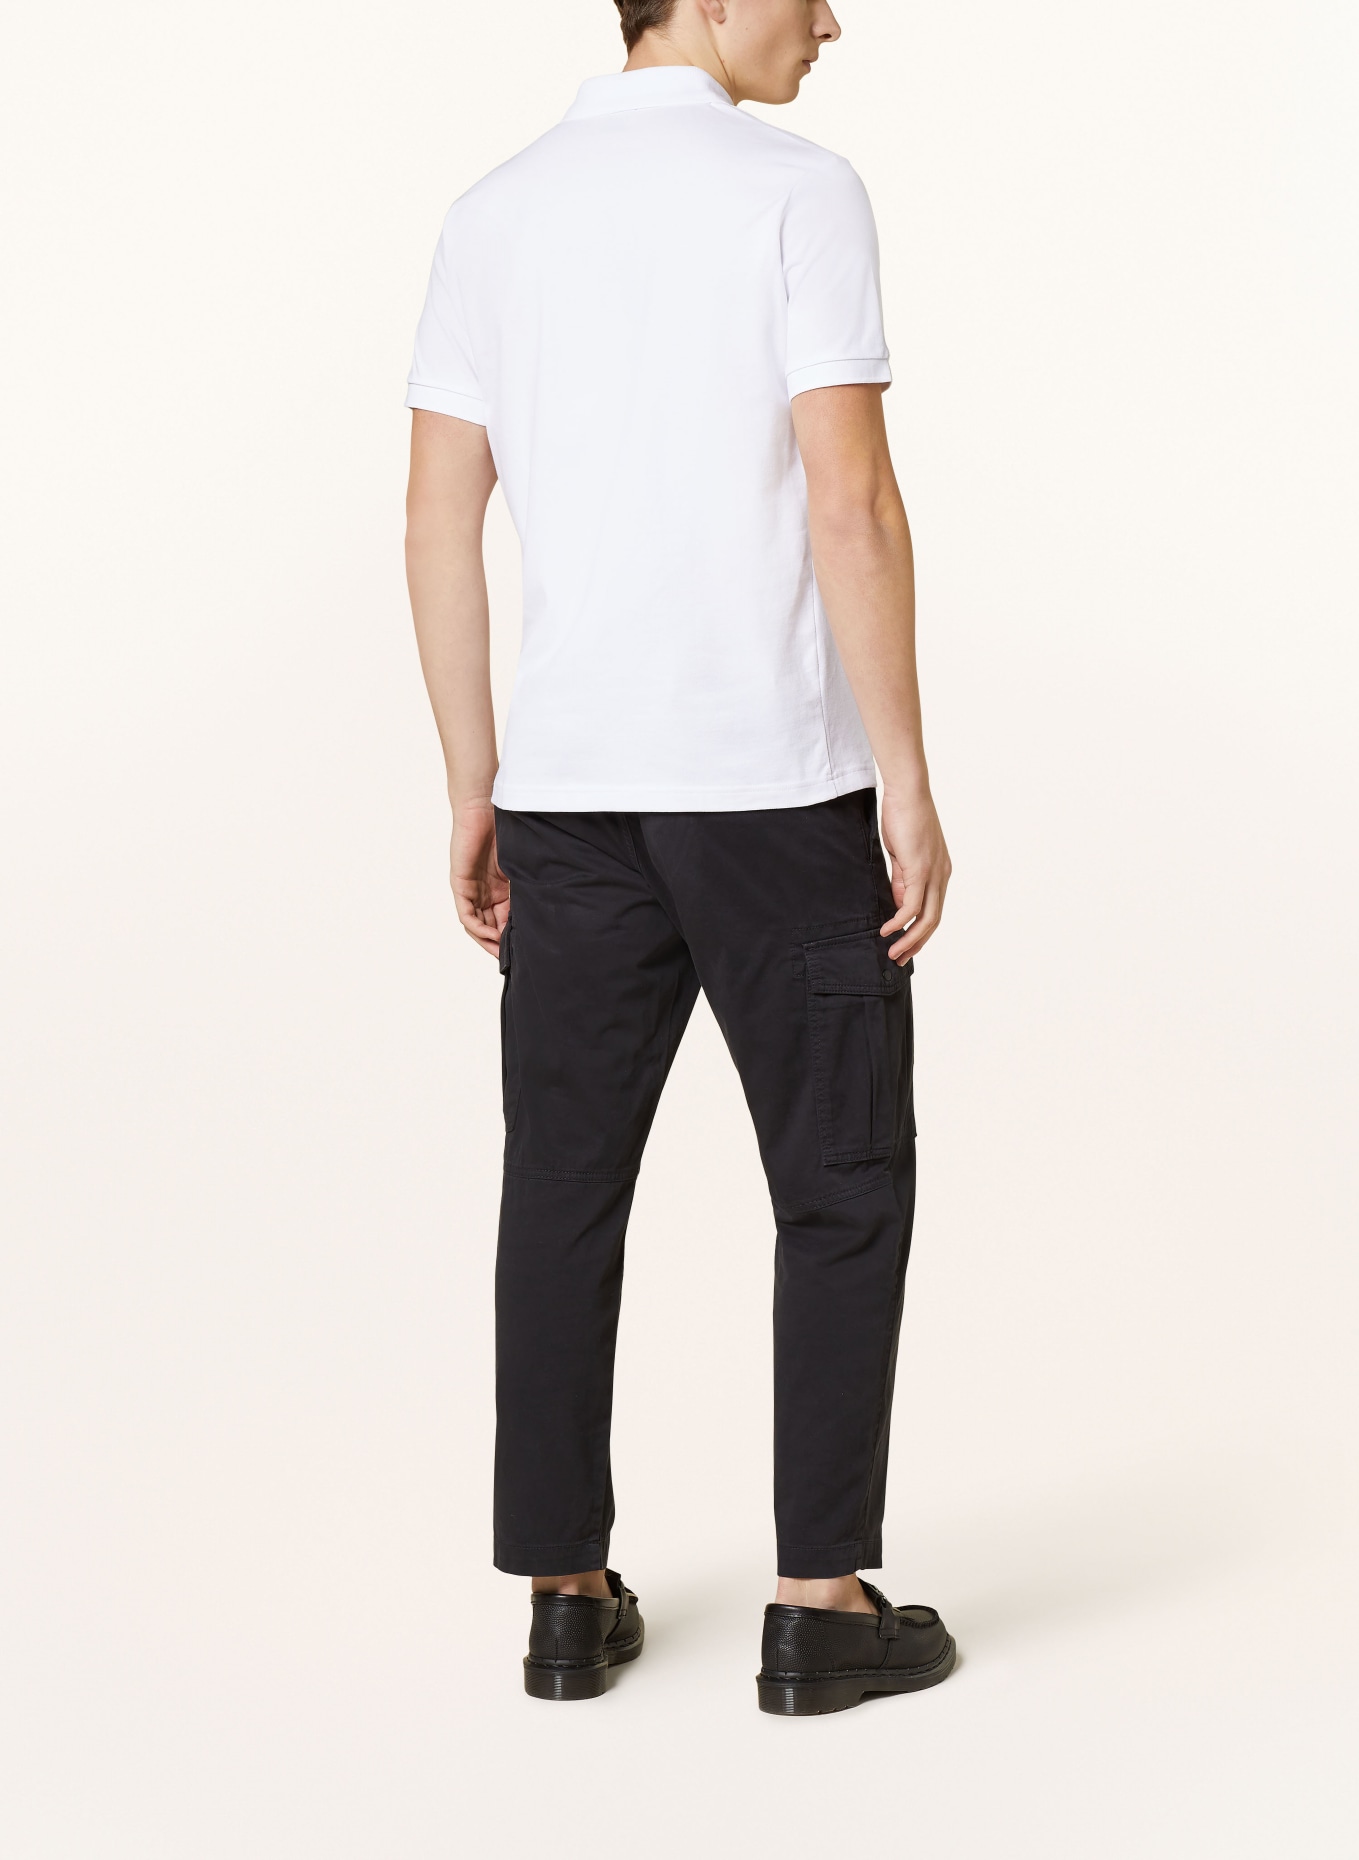 BOSS Piqué polo shirt PASSENGER slim fit, Color: WHITE (Image 3)